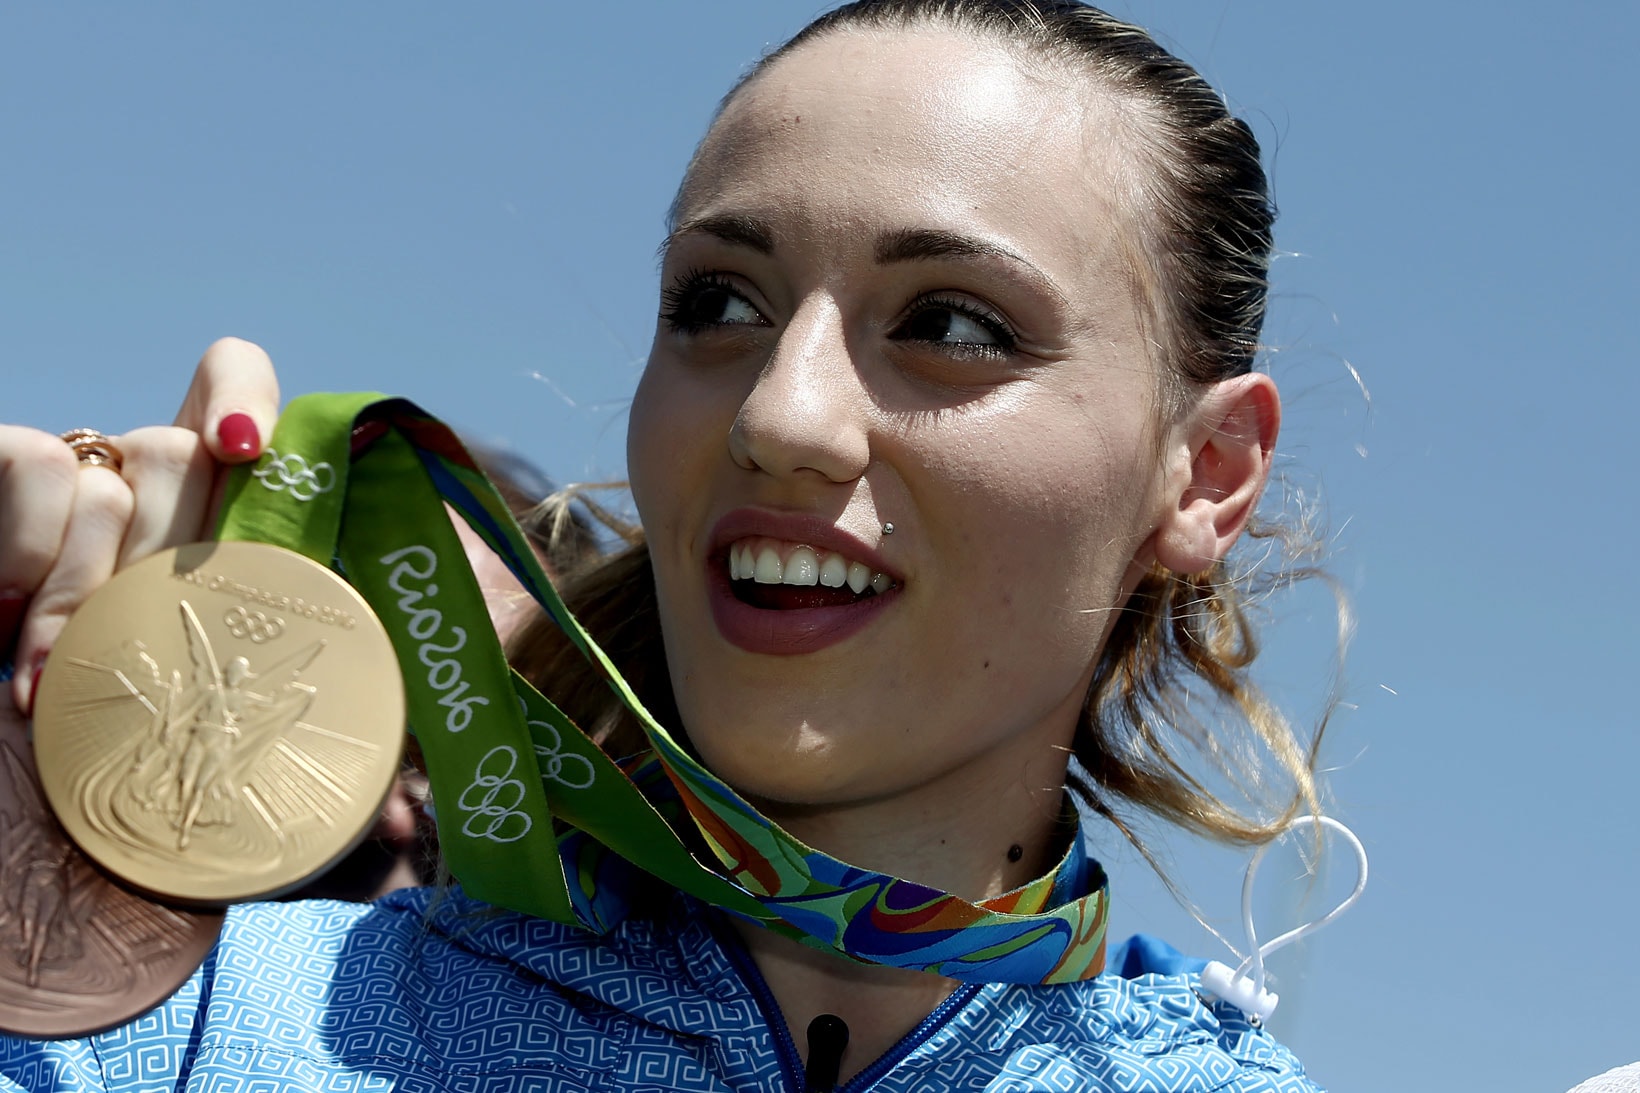 Anna Korakaki 2016 Olympics Rio de Janiero